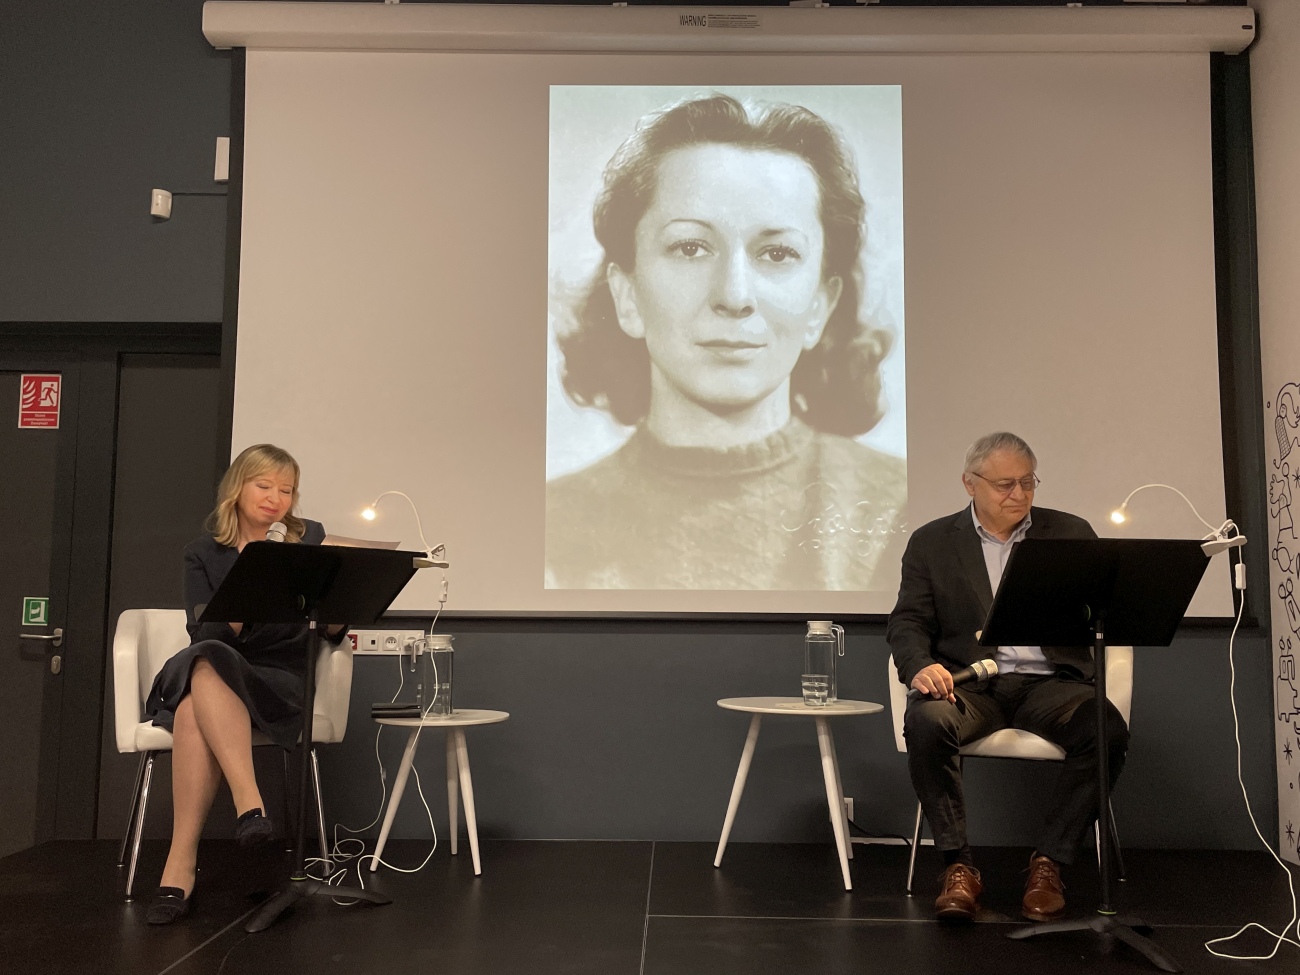 Dorota Segda i Jacek Romanowski, na ekranie wyświetla zdjęcie Wisławy Szymborskiej